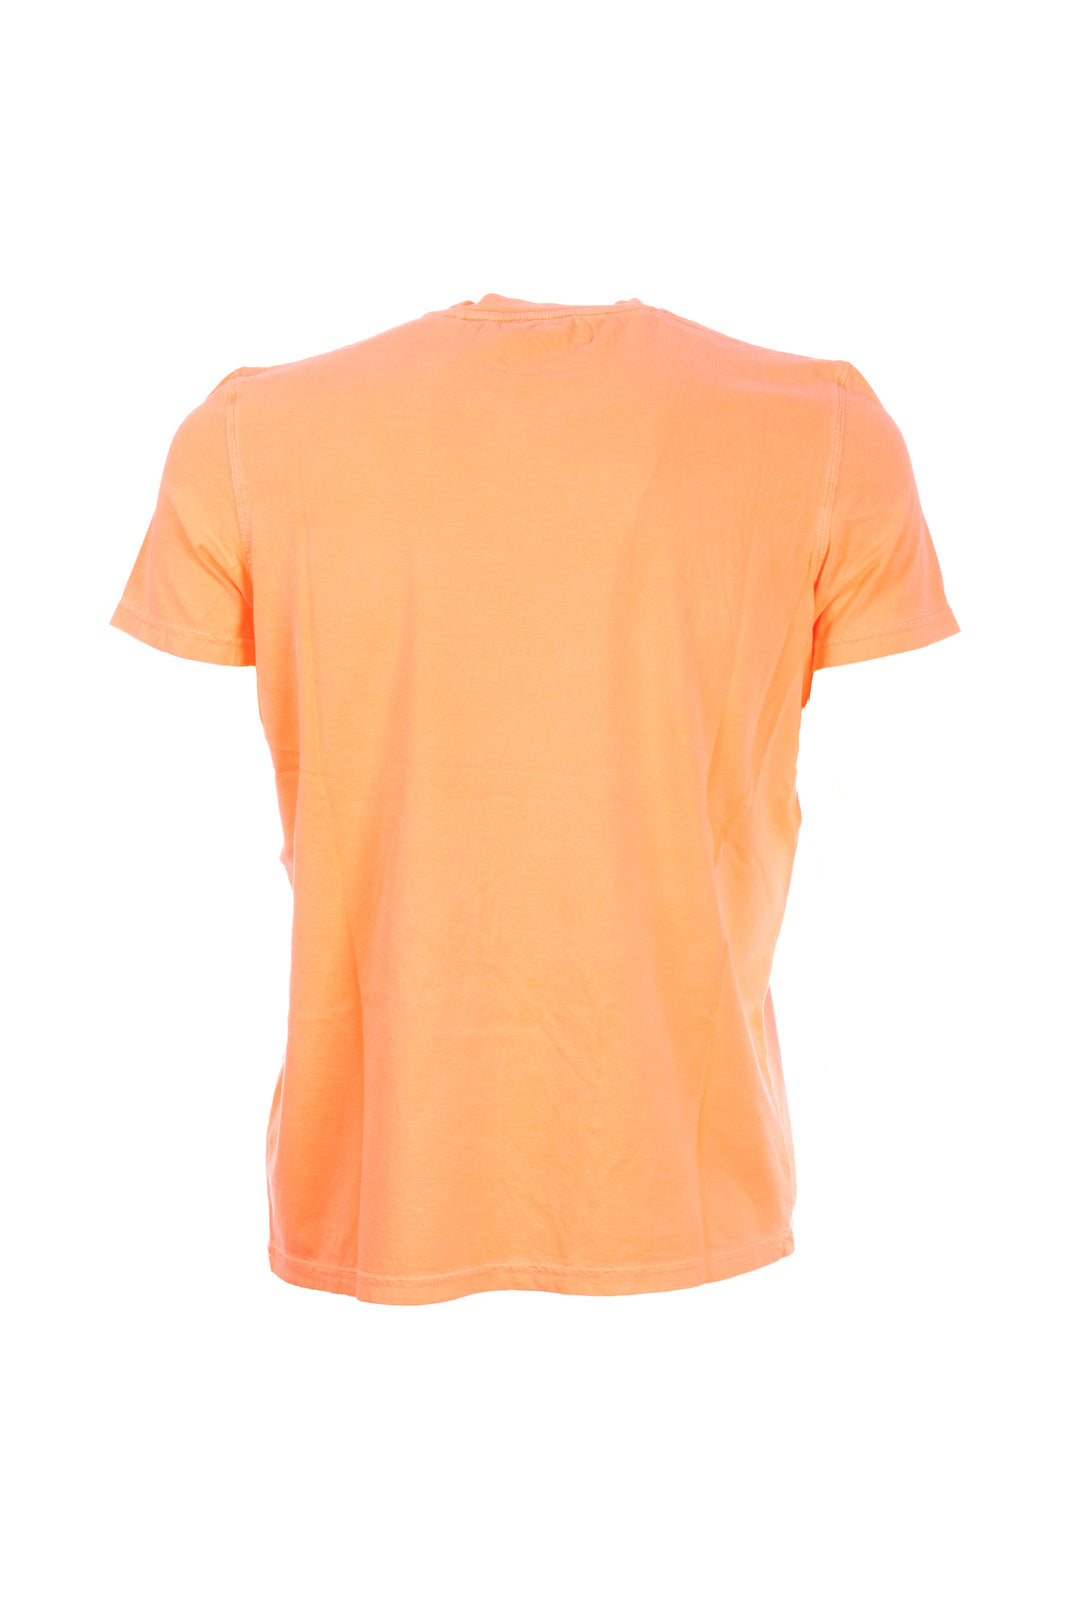 U.S. POLO ASSN. T-shirt arancio in cotone con logo ricamato - Mancinelli 1954